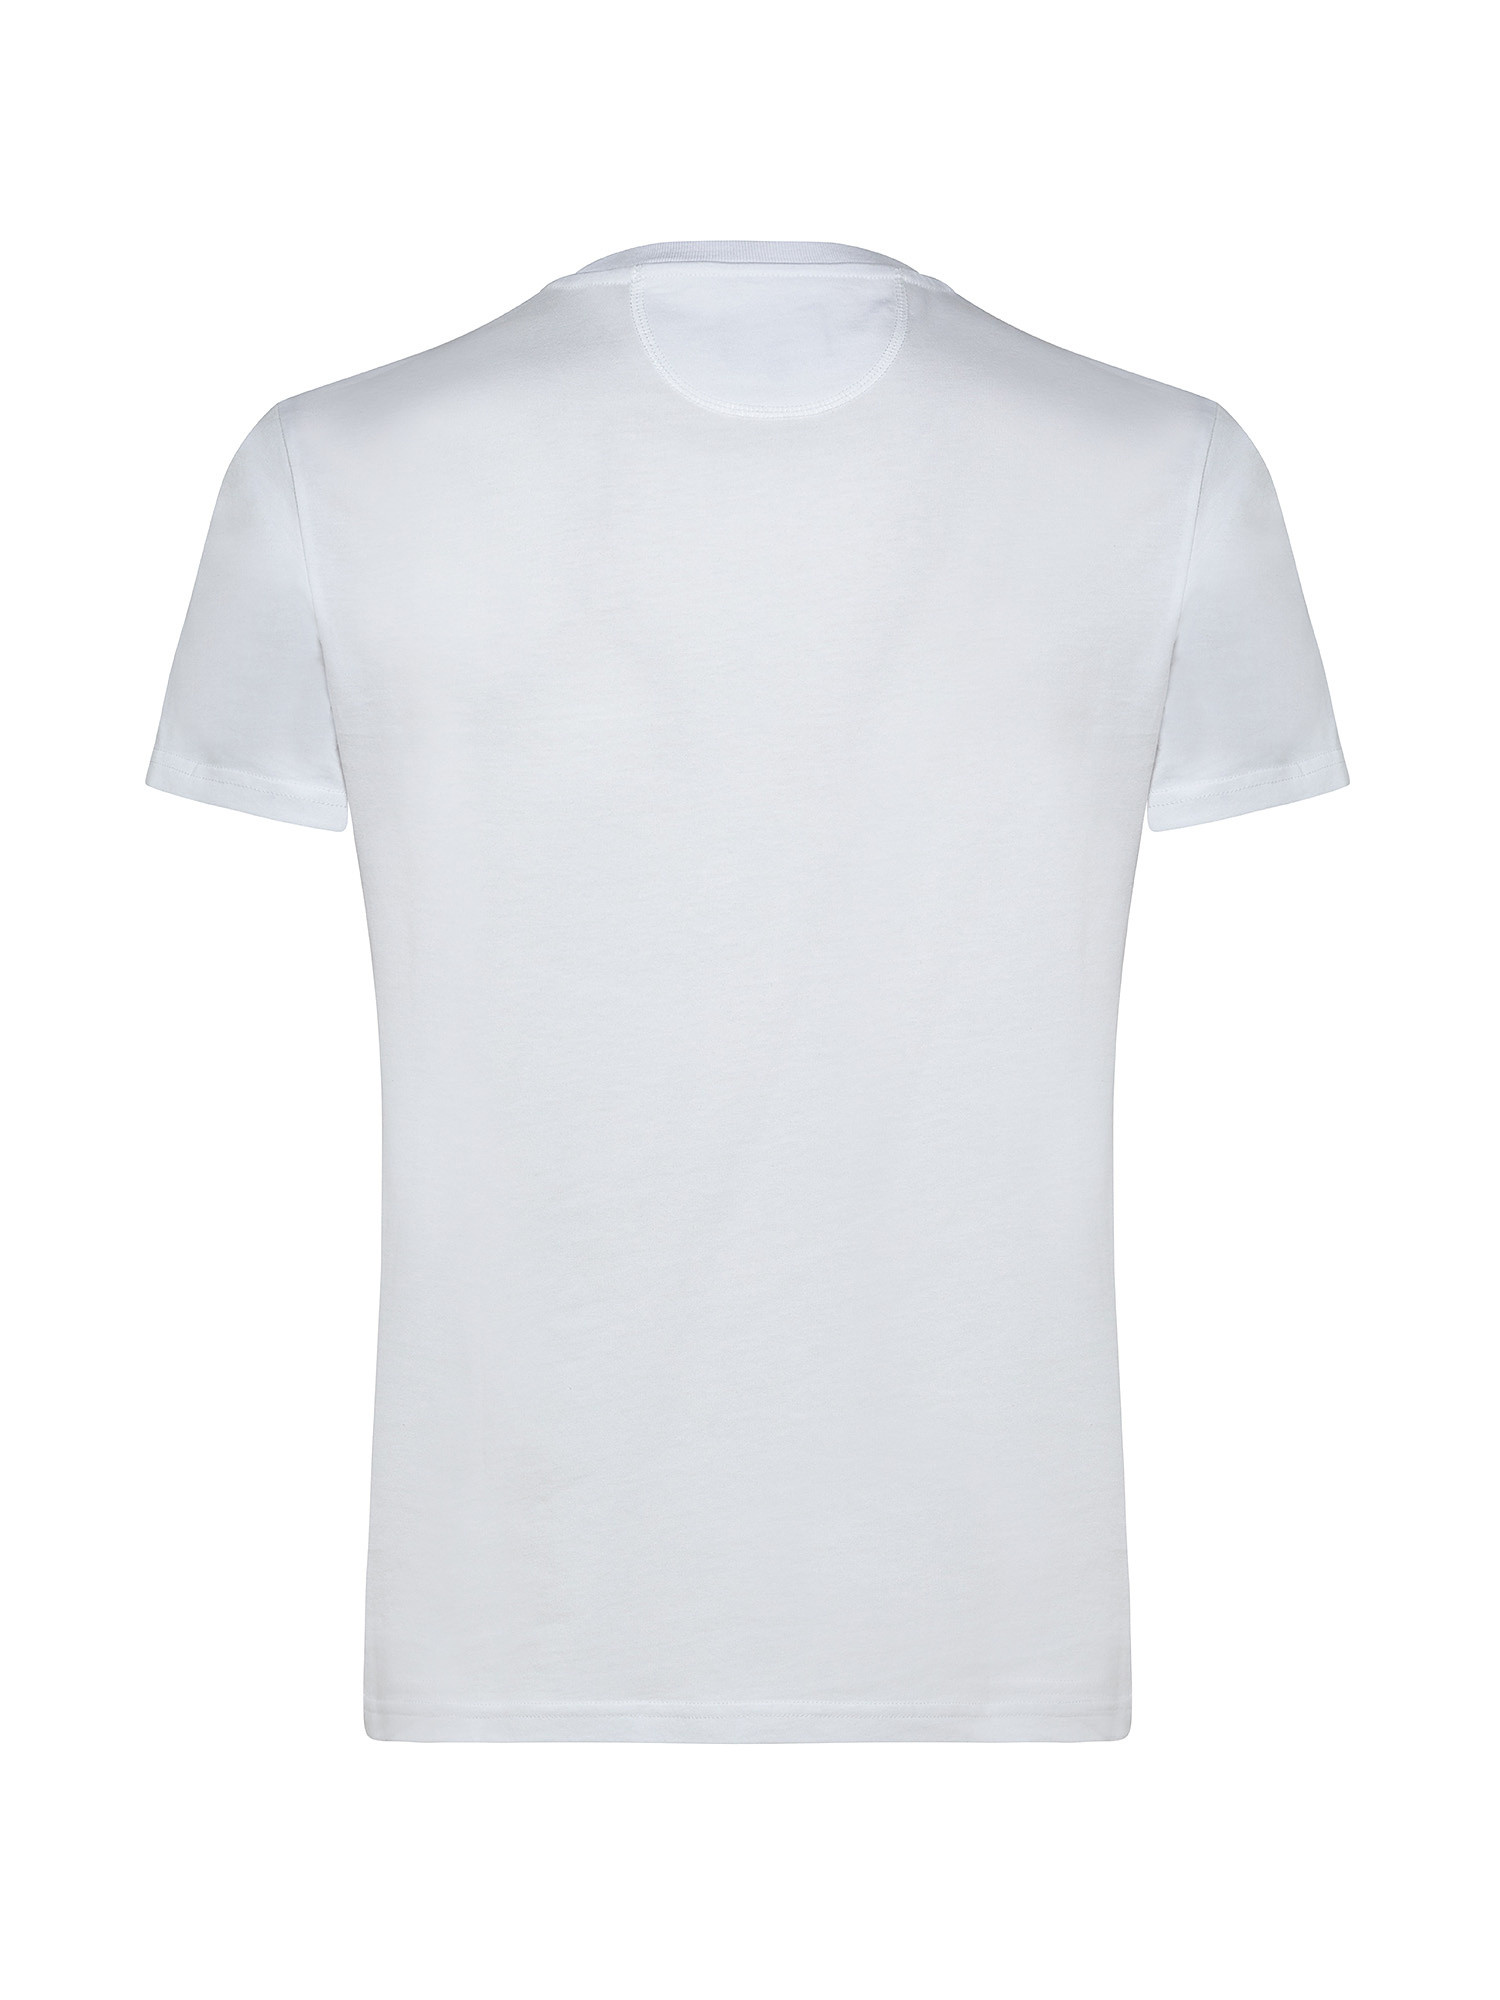 Men's short-sleeved regular-fit cotton T-shirt, White, large image number 1